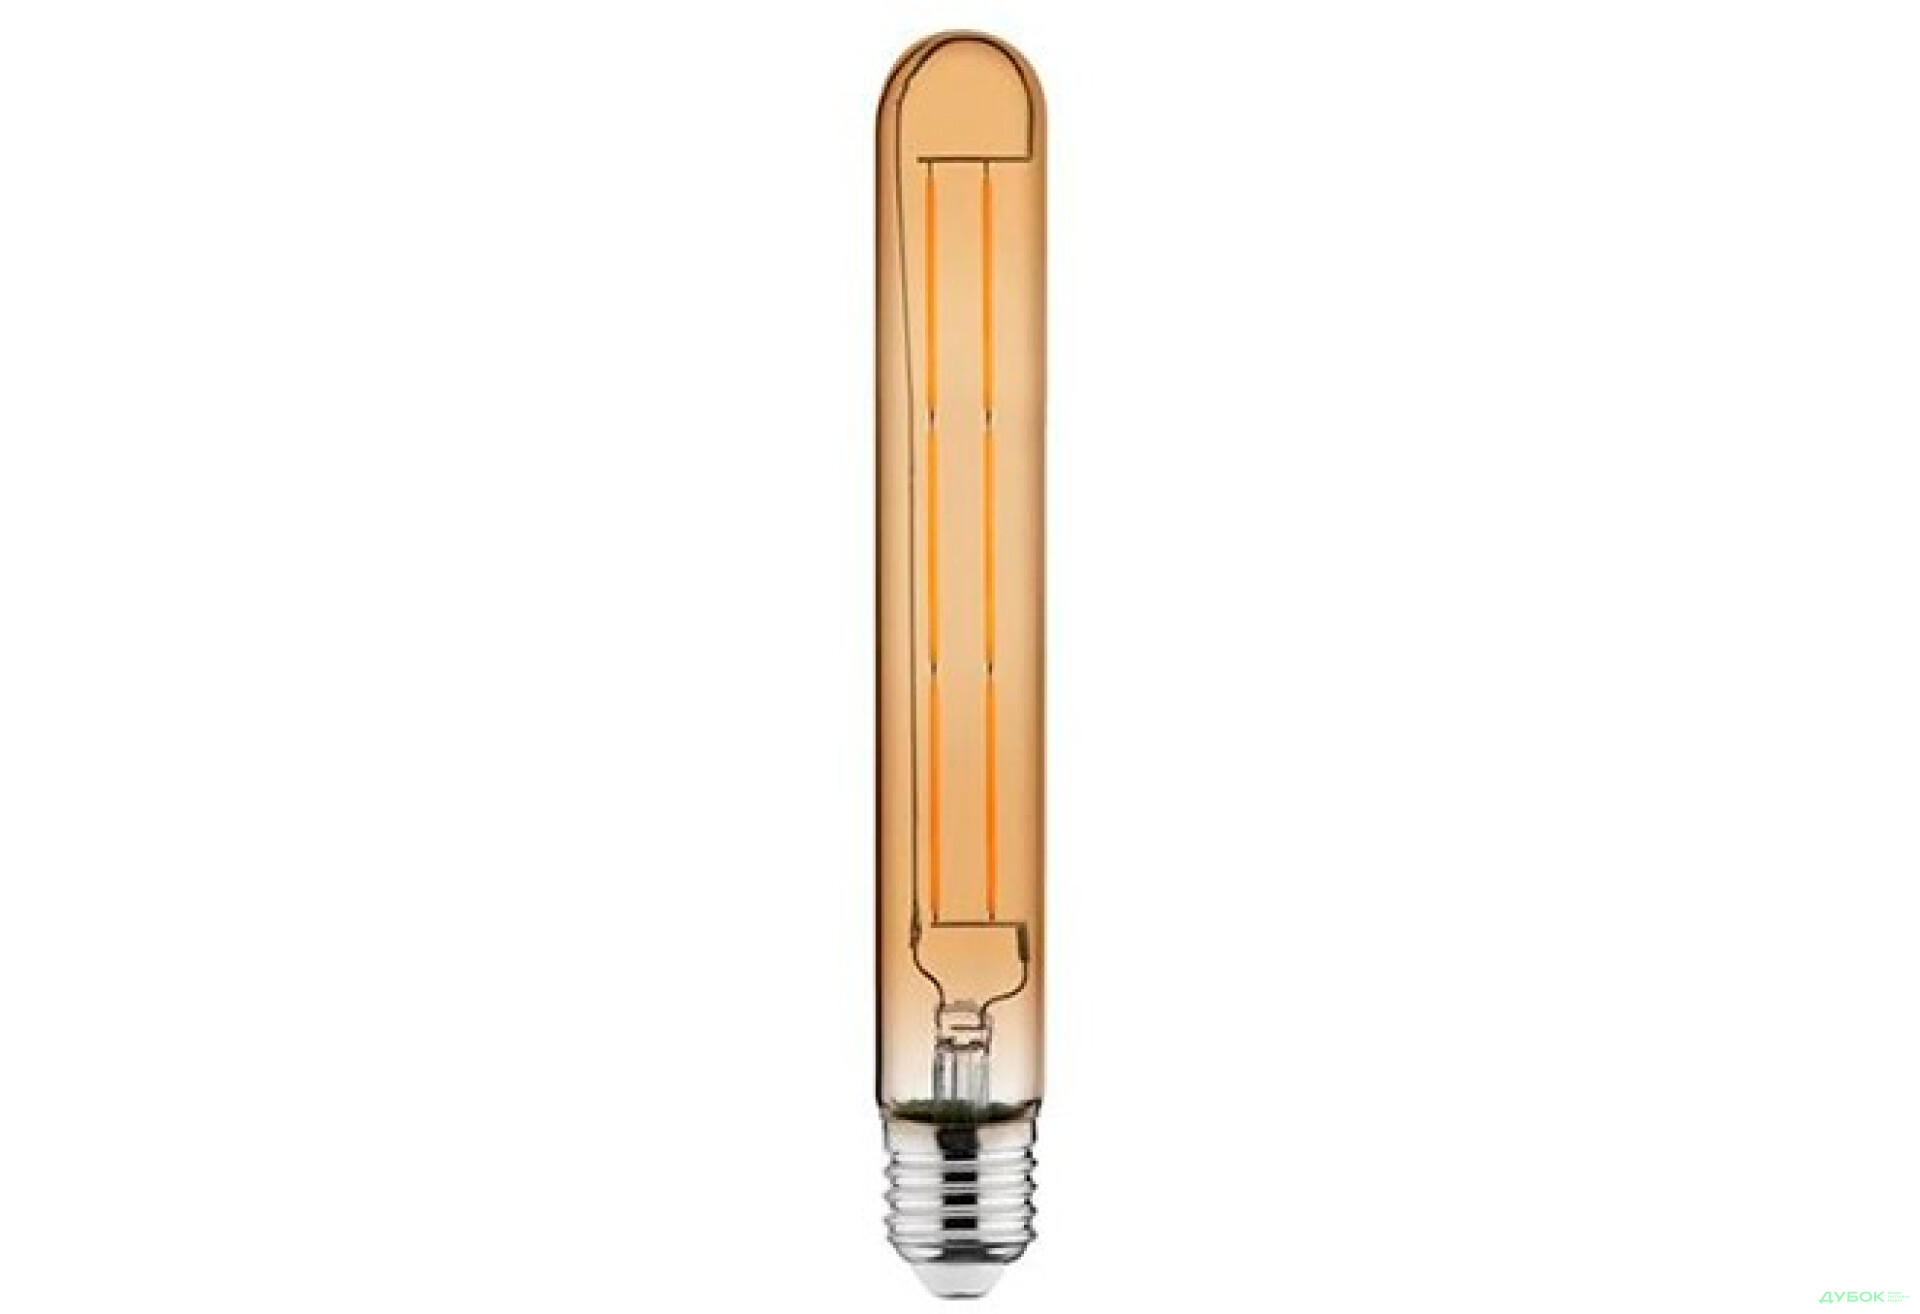 Фото 1 - Лампа Filament Rustic tube-8 8Вт Е27 2200К, 001-033-0008 Horoz Electric